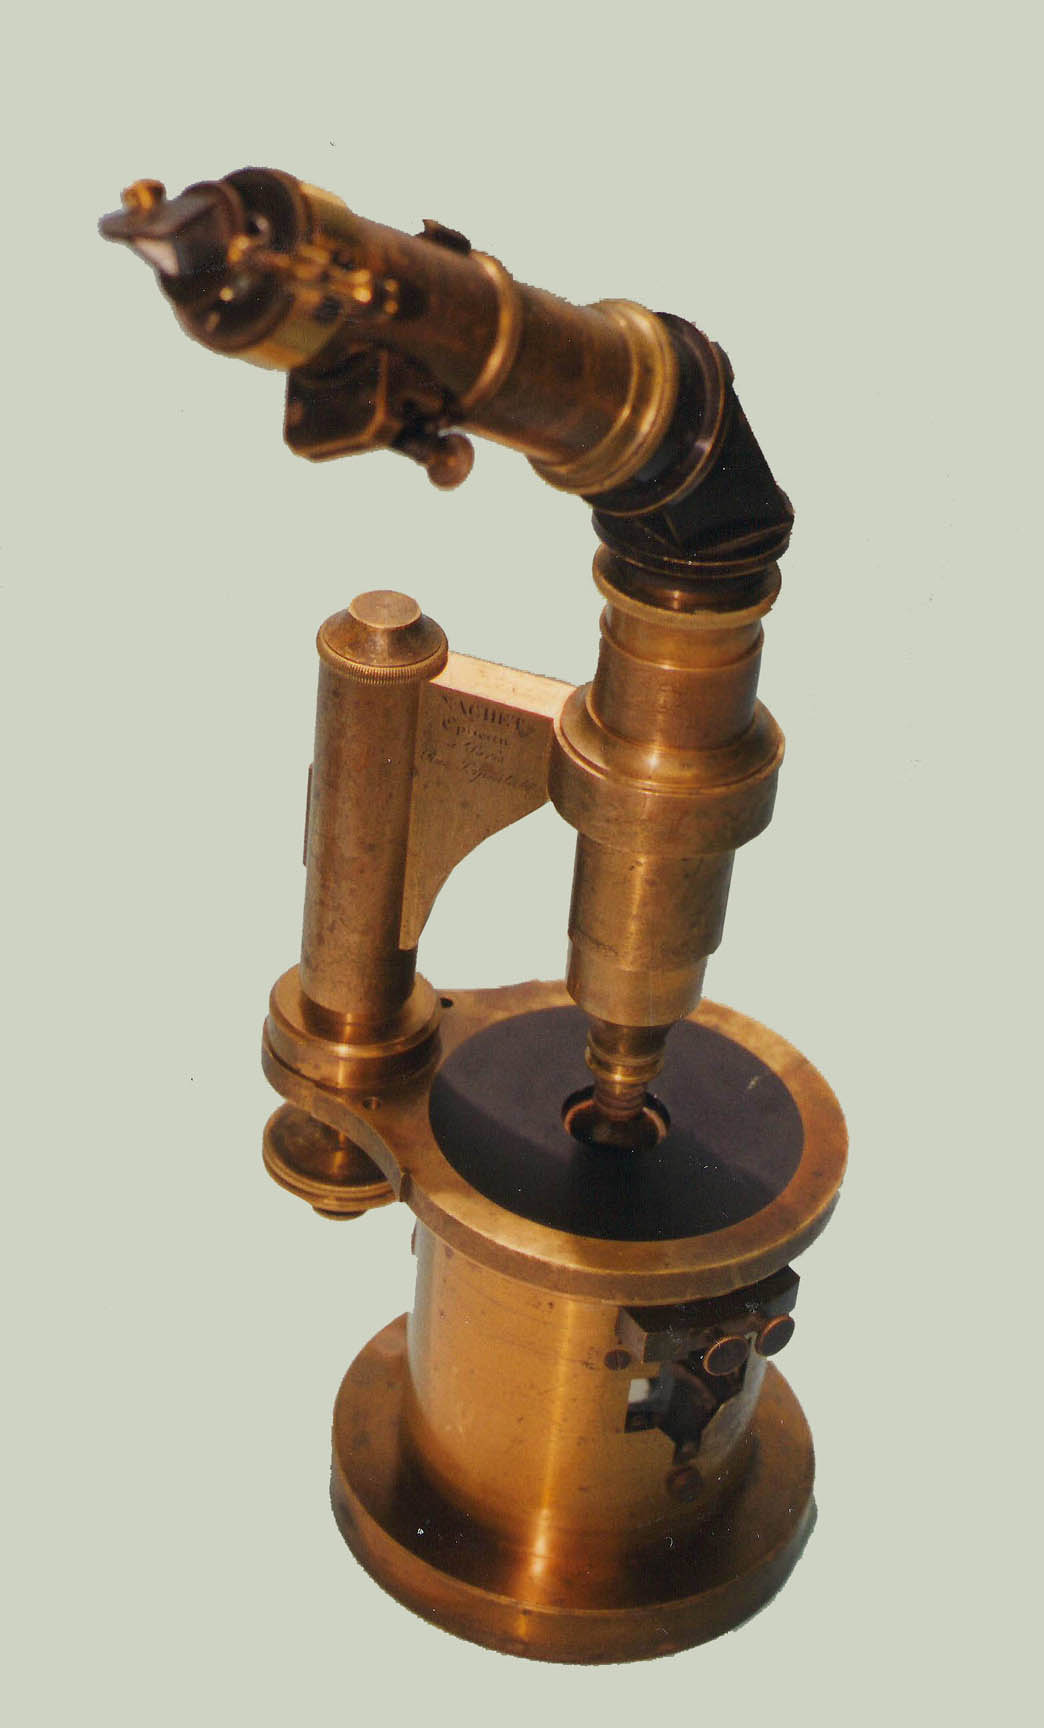 Nachet Drum Microscope